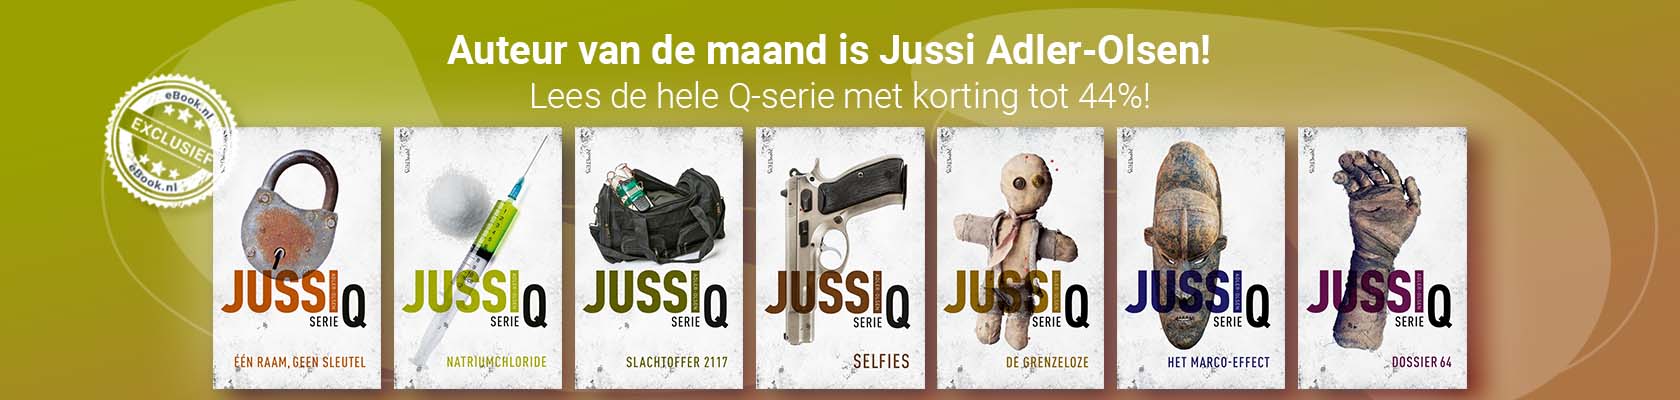 Auteur van de maand: Jussi Adler-Olsen